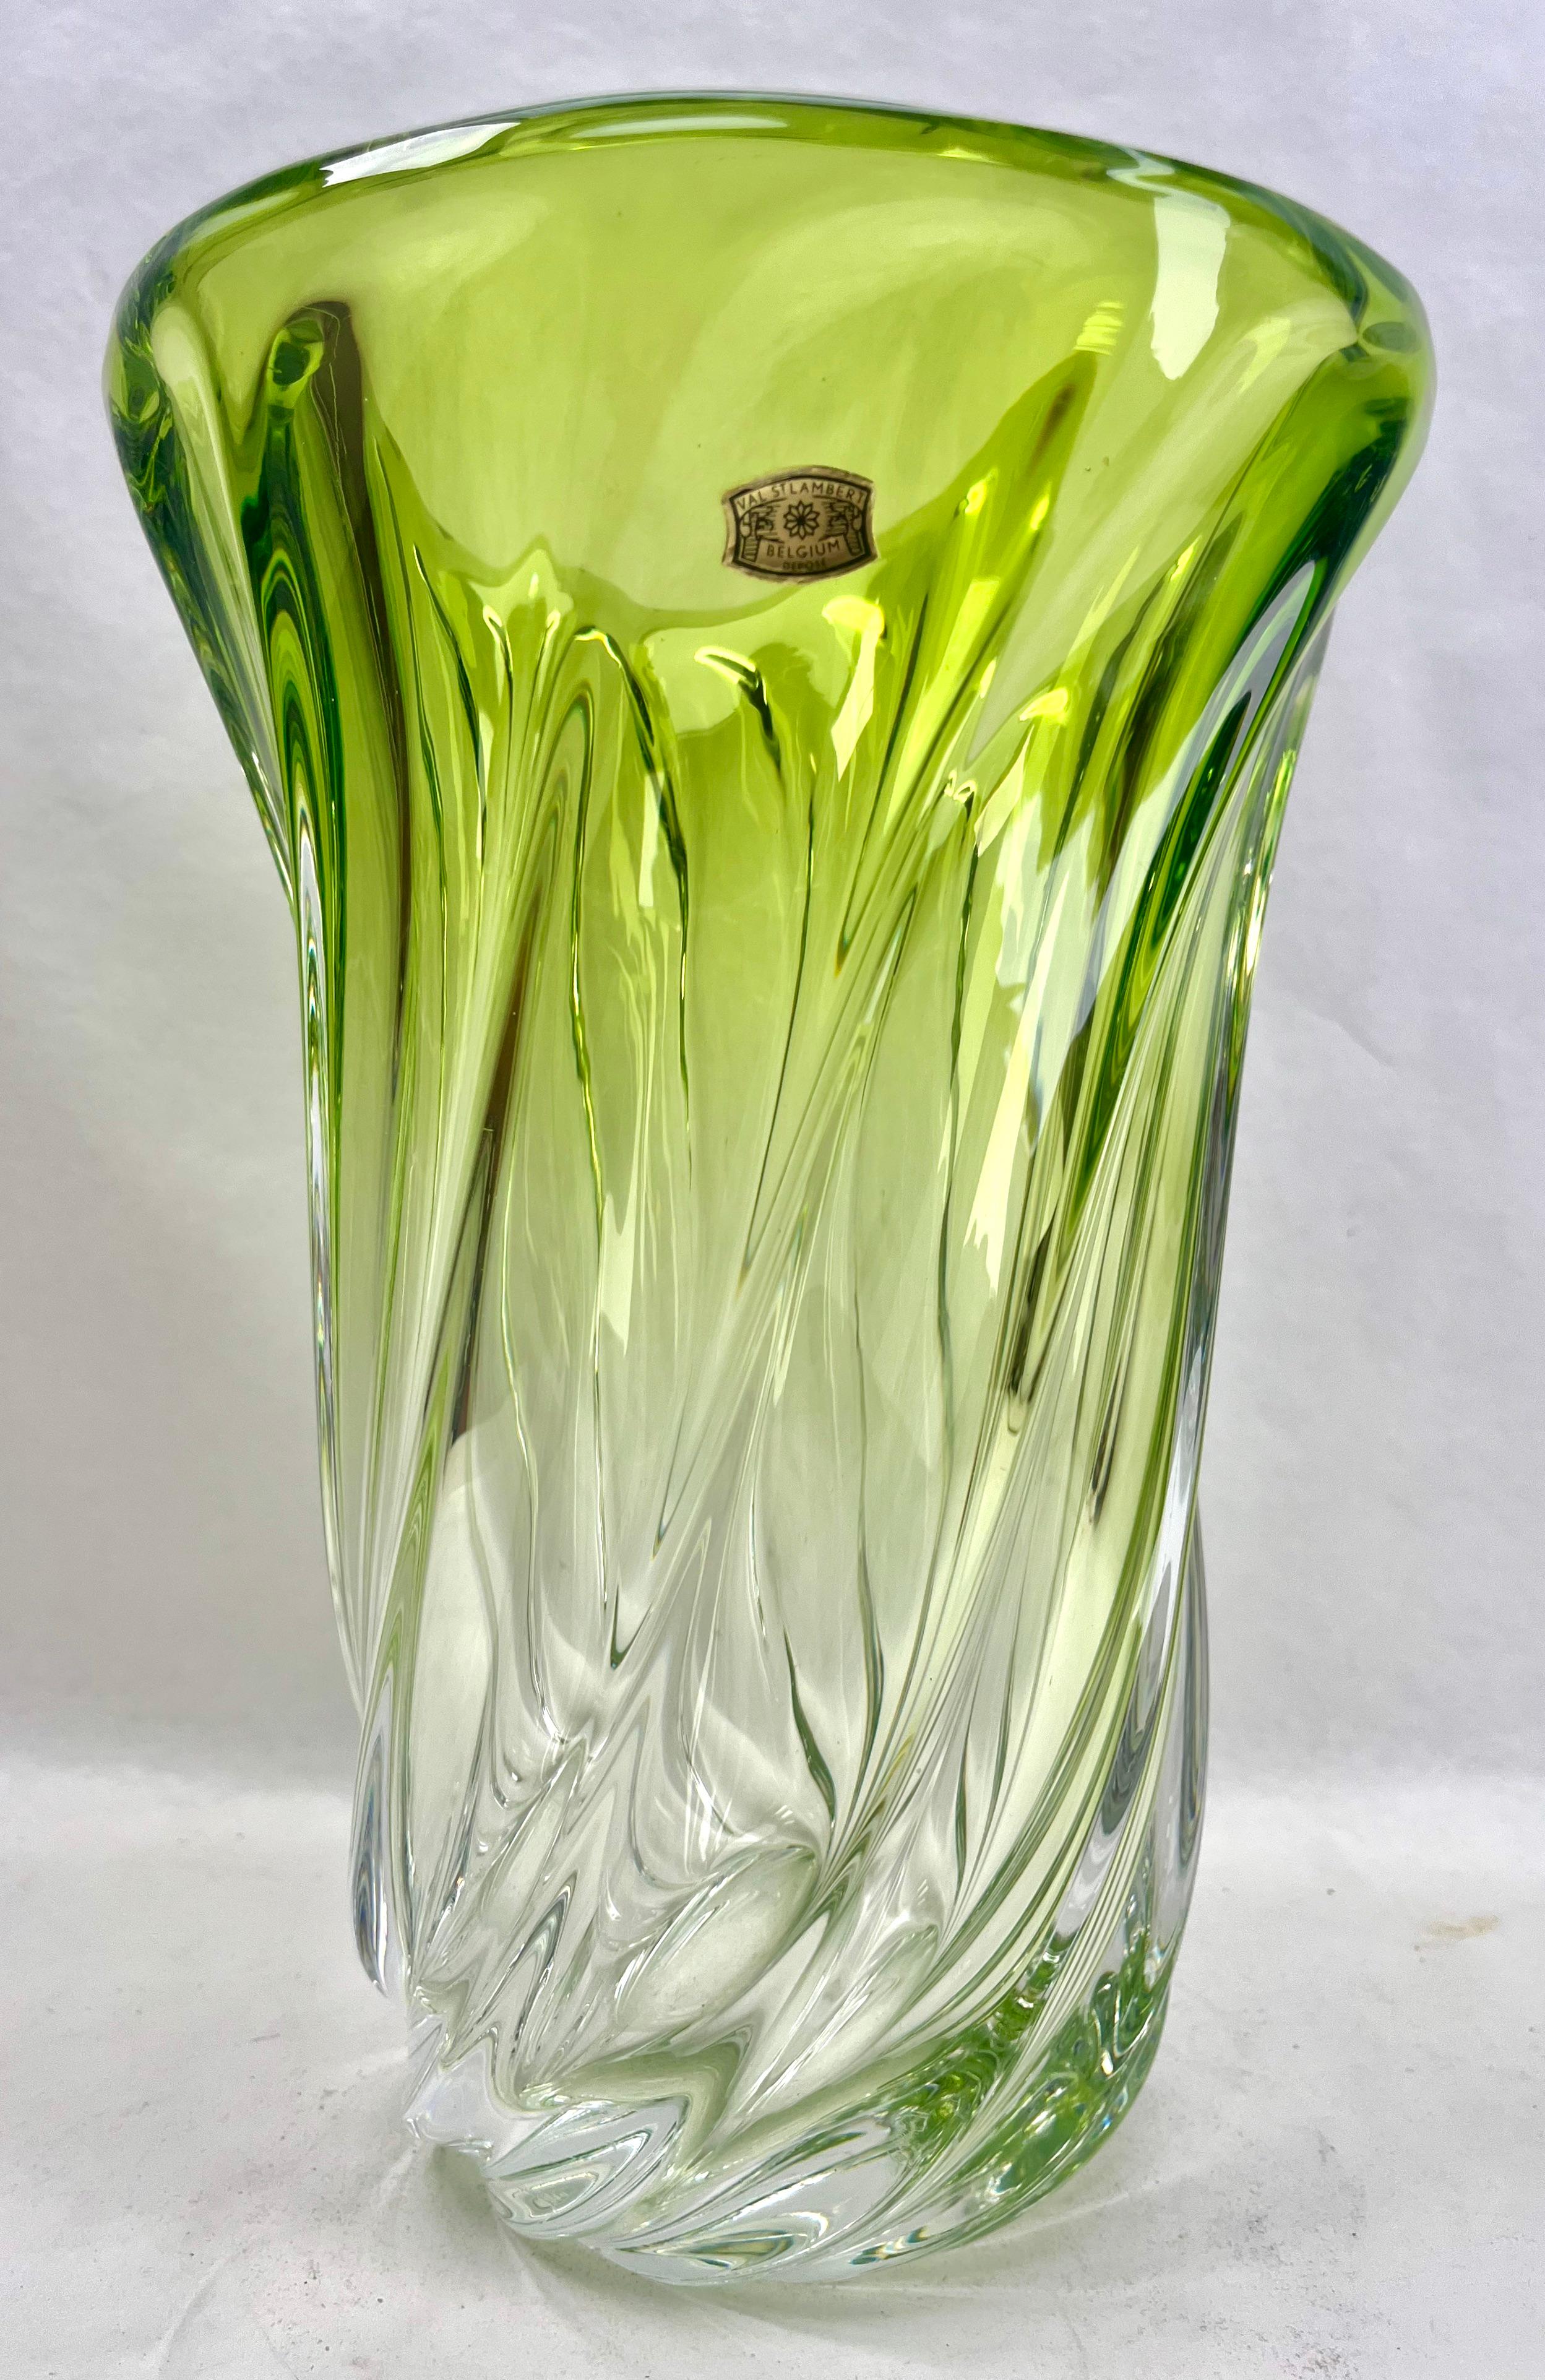 Val Saint Lambert, LABEL  geschliffene Kristallvase mit grünem Kern, Belgien.

Schwere Vase aus Val Saint Lambert-Kristall, katalogisiert in den 1950er Jahren.
Die zentrale Amethystfarbe (ein traditioneller Favorit von VSL) wurde mit einer dicken